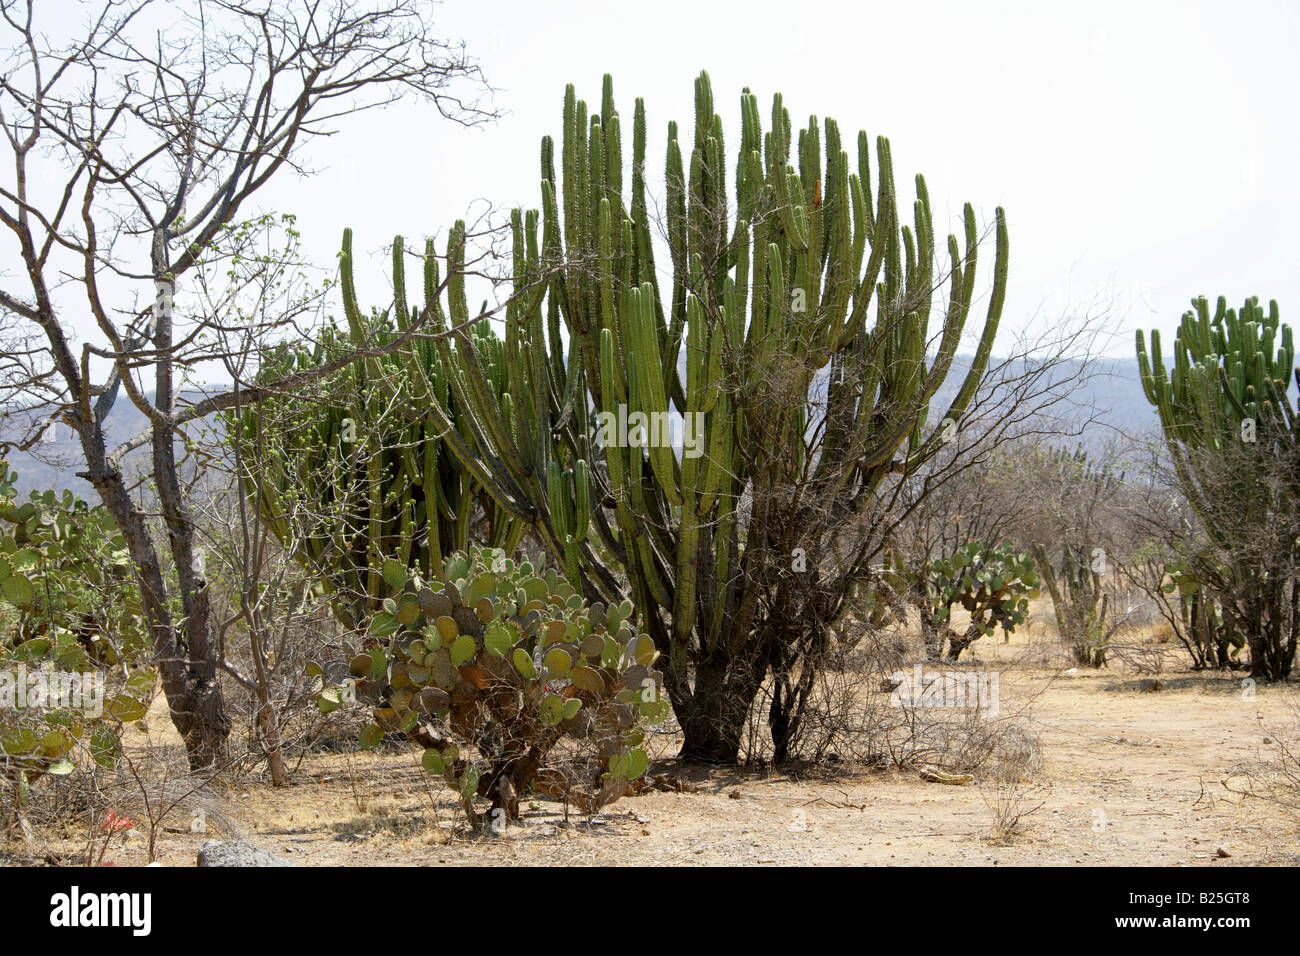 El cactus Opuntia y cactus candelabro Myrtillocactus cochal, Sierra Madre, en el estado de Oaxaca, México Foto de stock